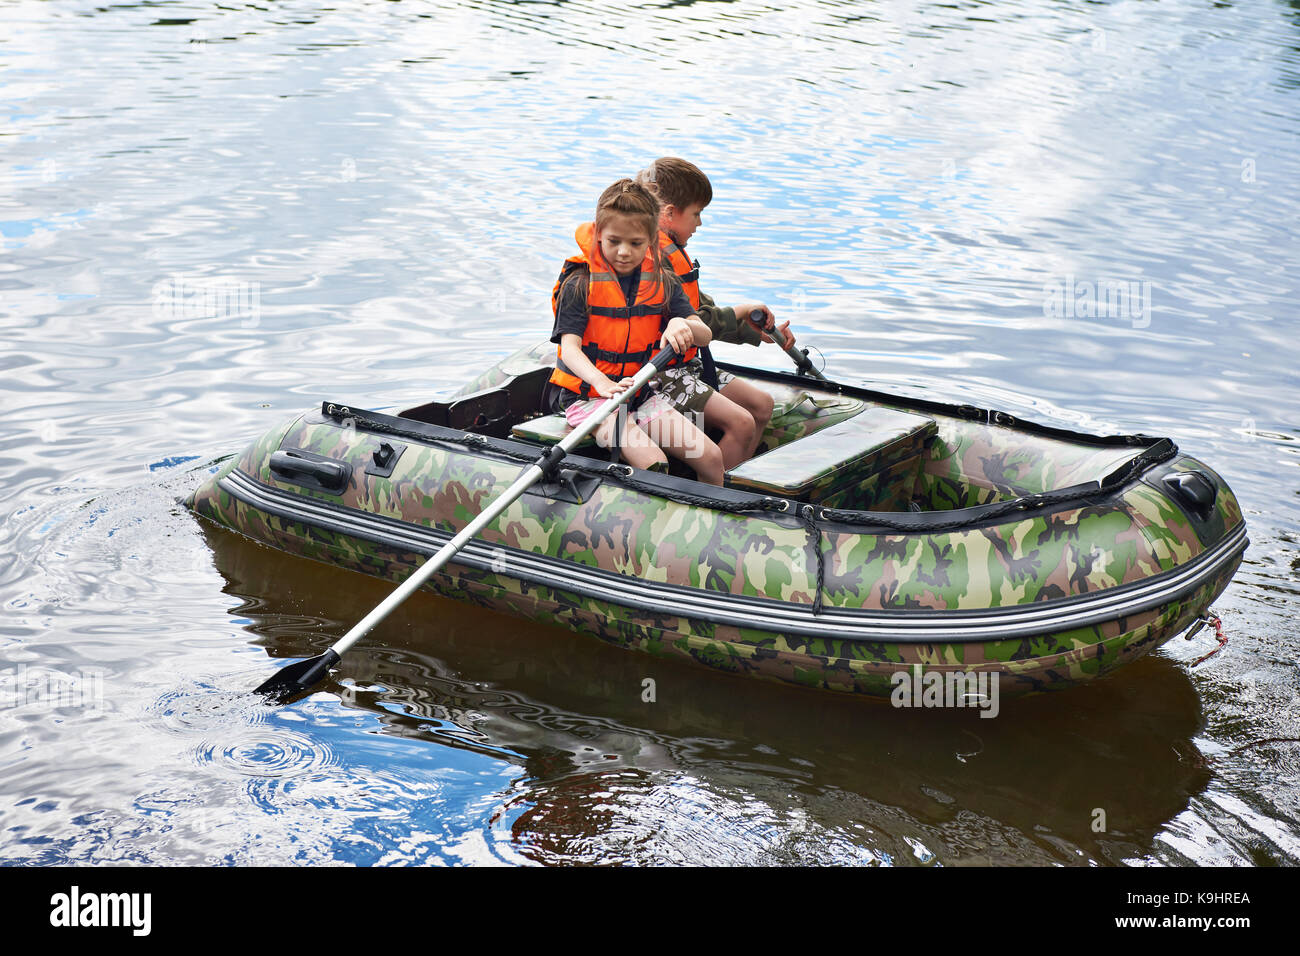 Los niños de chalecos salvavidas nadar en el barco Foto de stock